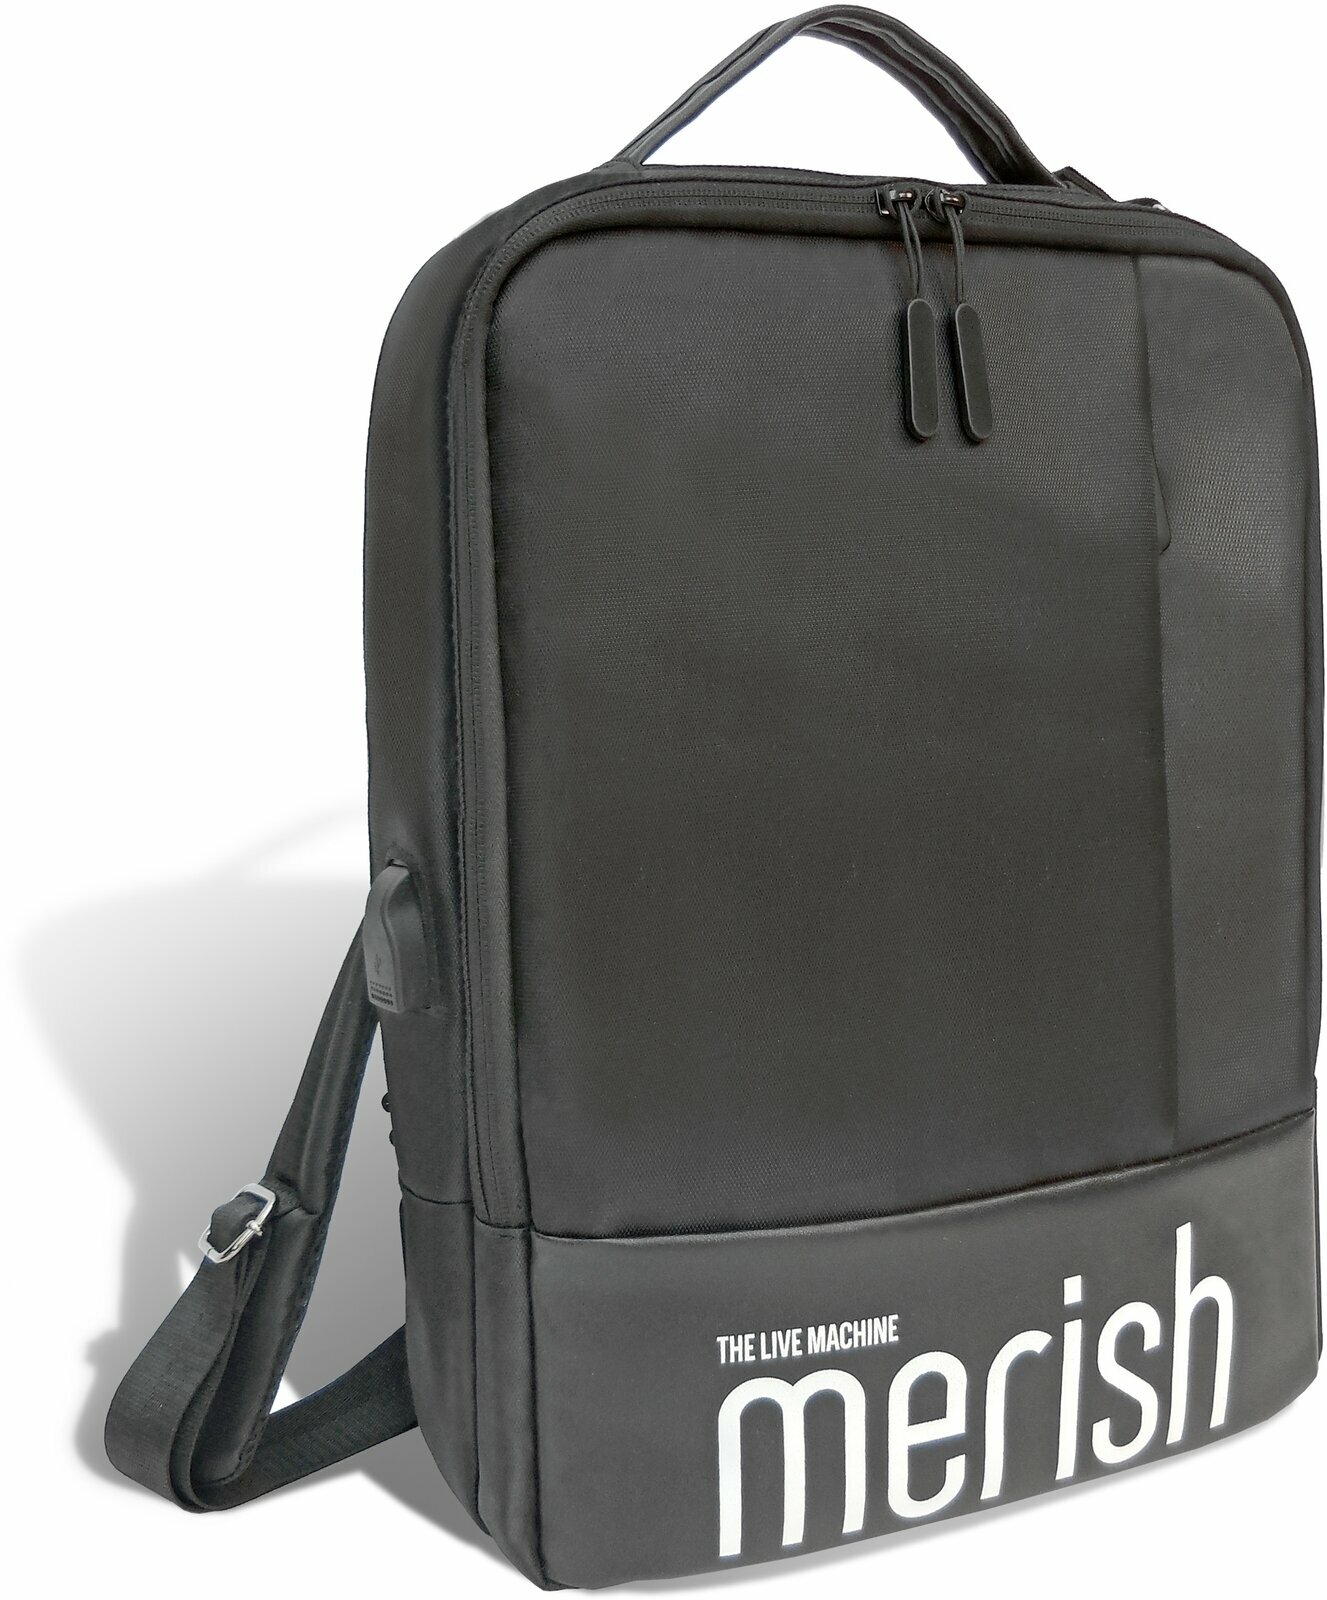 M-Live Merish Soft Bag